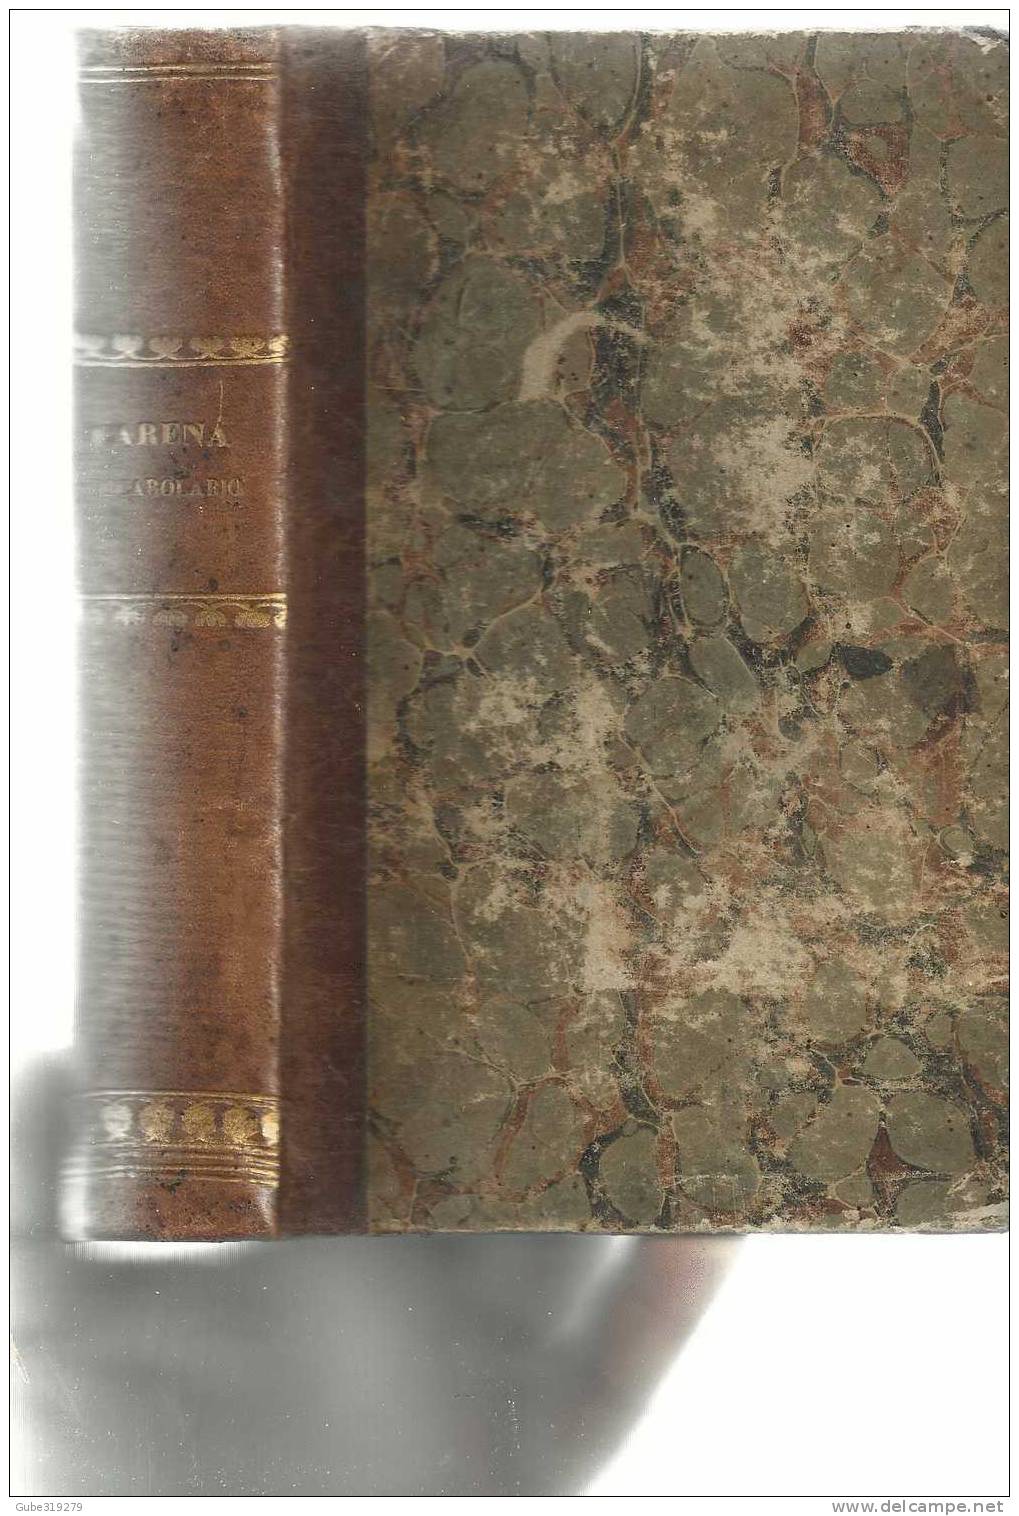 ANNO 1859 - REF.10- VOCABOLARIO DOMESTICO DEL PROF.  GIACINTO CARENA -4ª EDIZIONE G.MARGHIERI - C BOUTTEAUX -NAPOLI - Oude Boeken